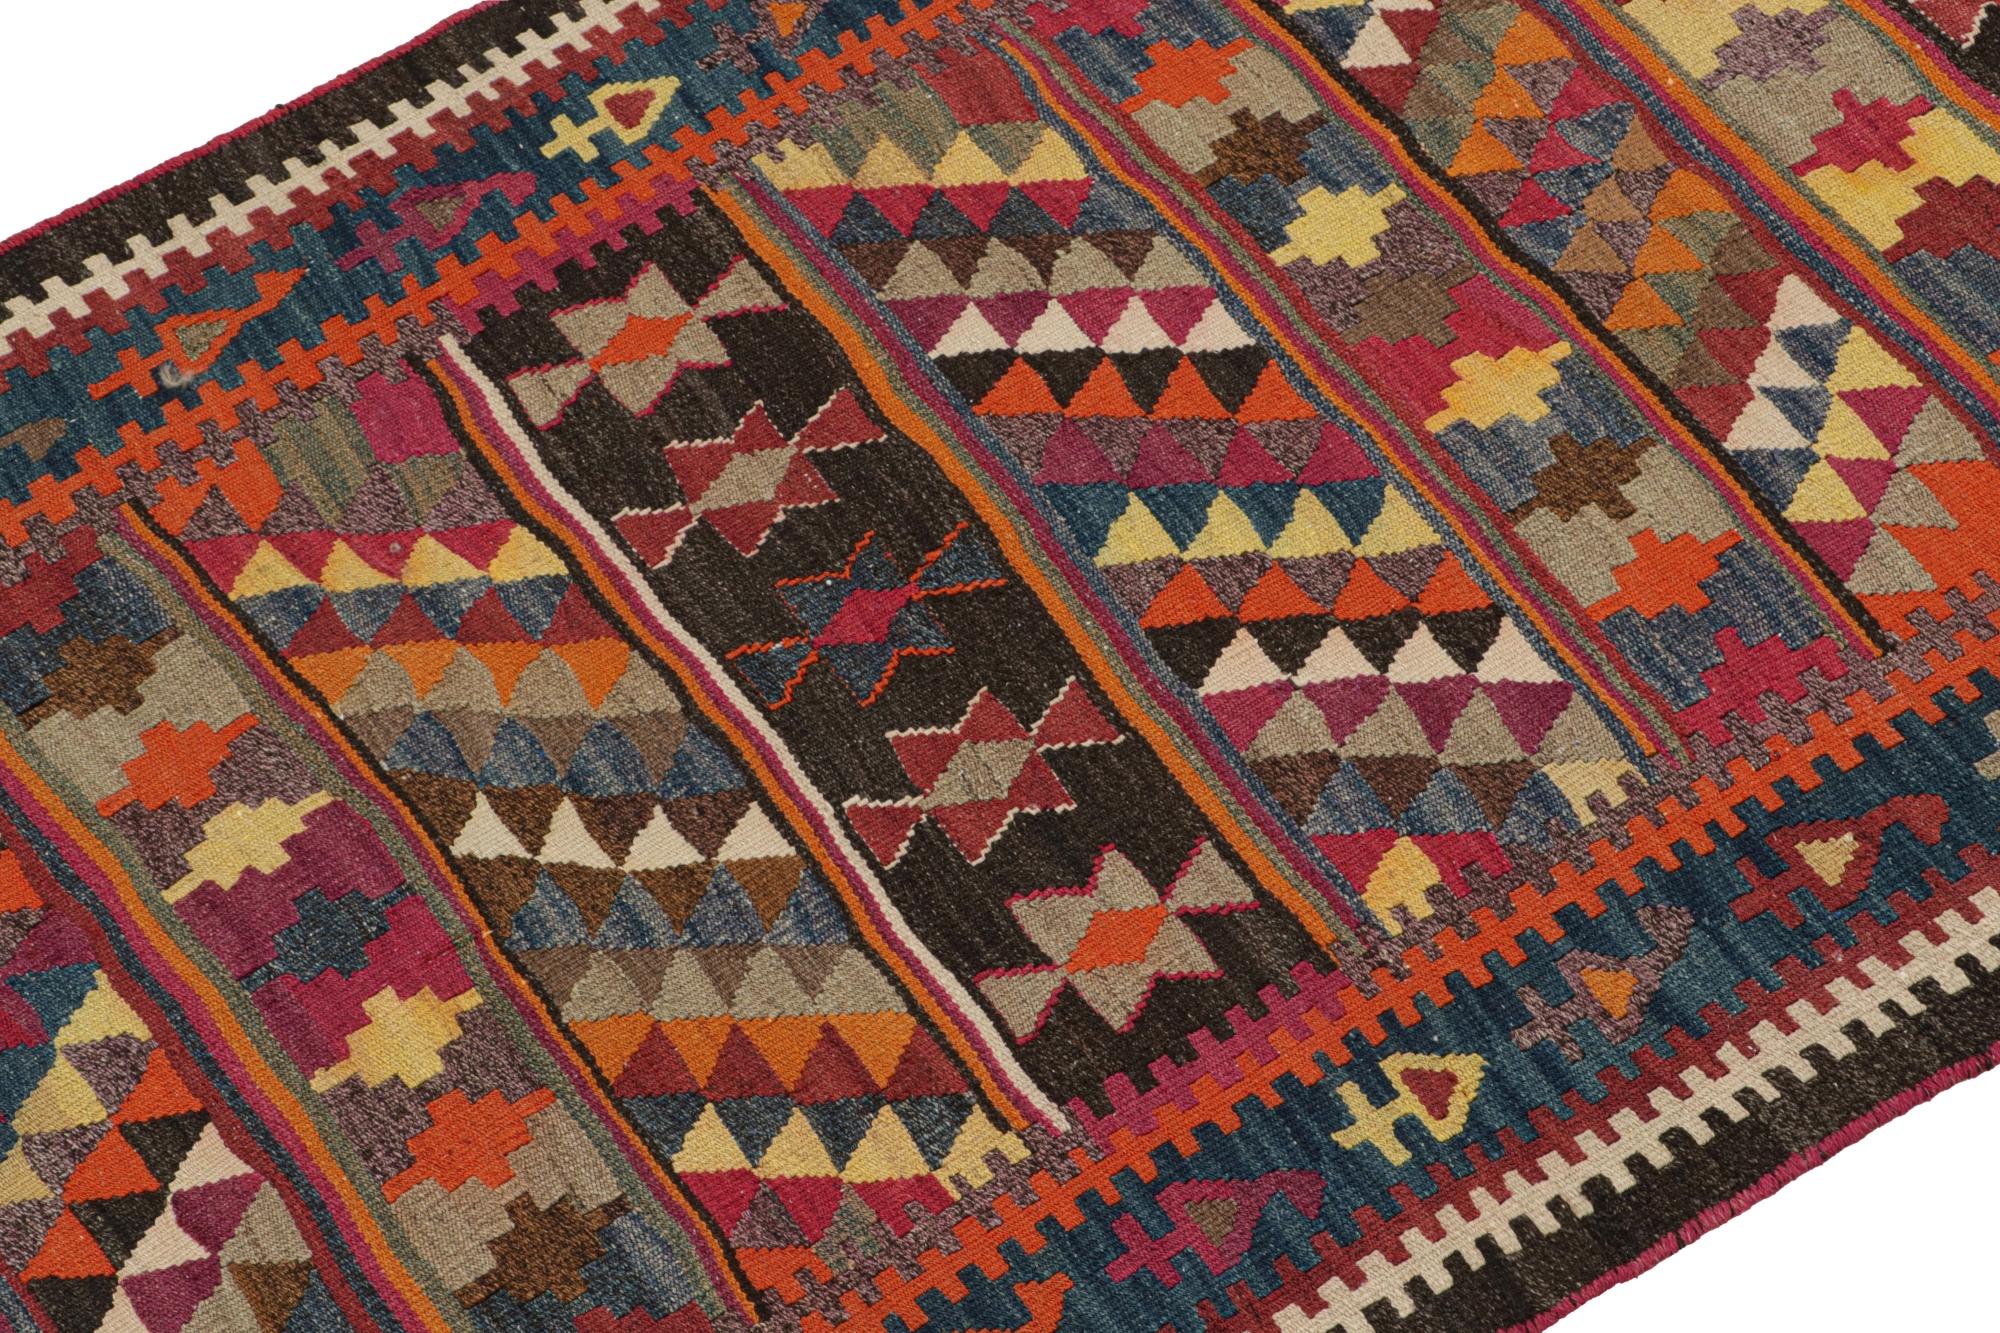 Dieser persische Bidjar-Kelim im Format 4x8 ist aus Wolle handgewebt und stammt aus der Zeit um 1950-1960. 

Weiter zum Design:

Das seltene Stück trägt polychromatische geometrische Muster mit Vorliebe für Schwarz, Orange, Rosa und Gelb. Kenner